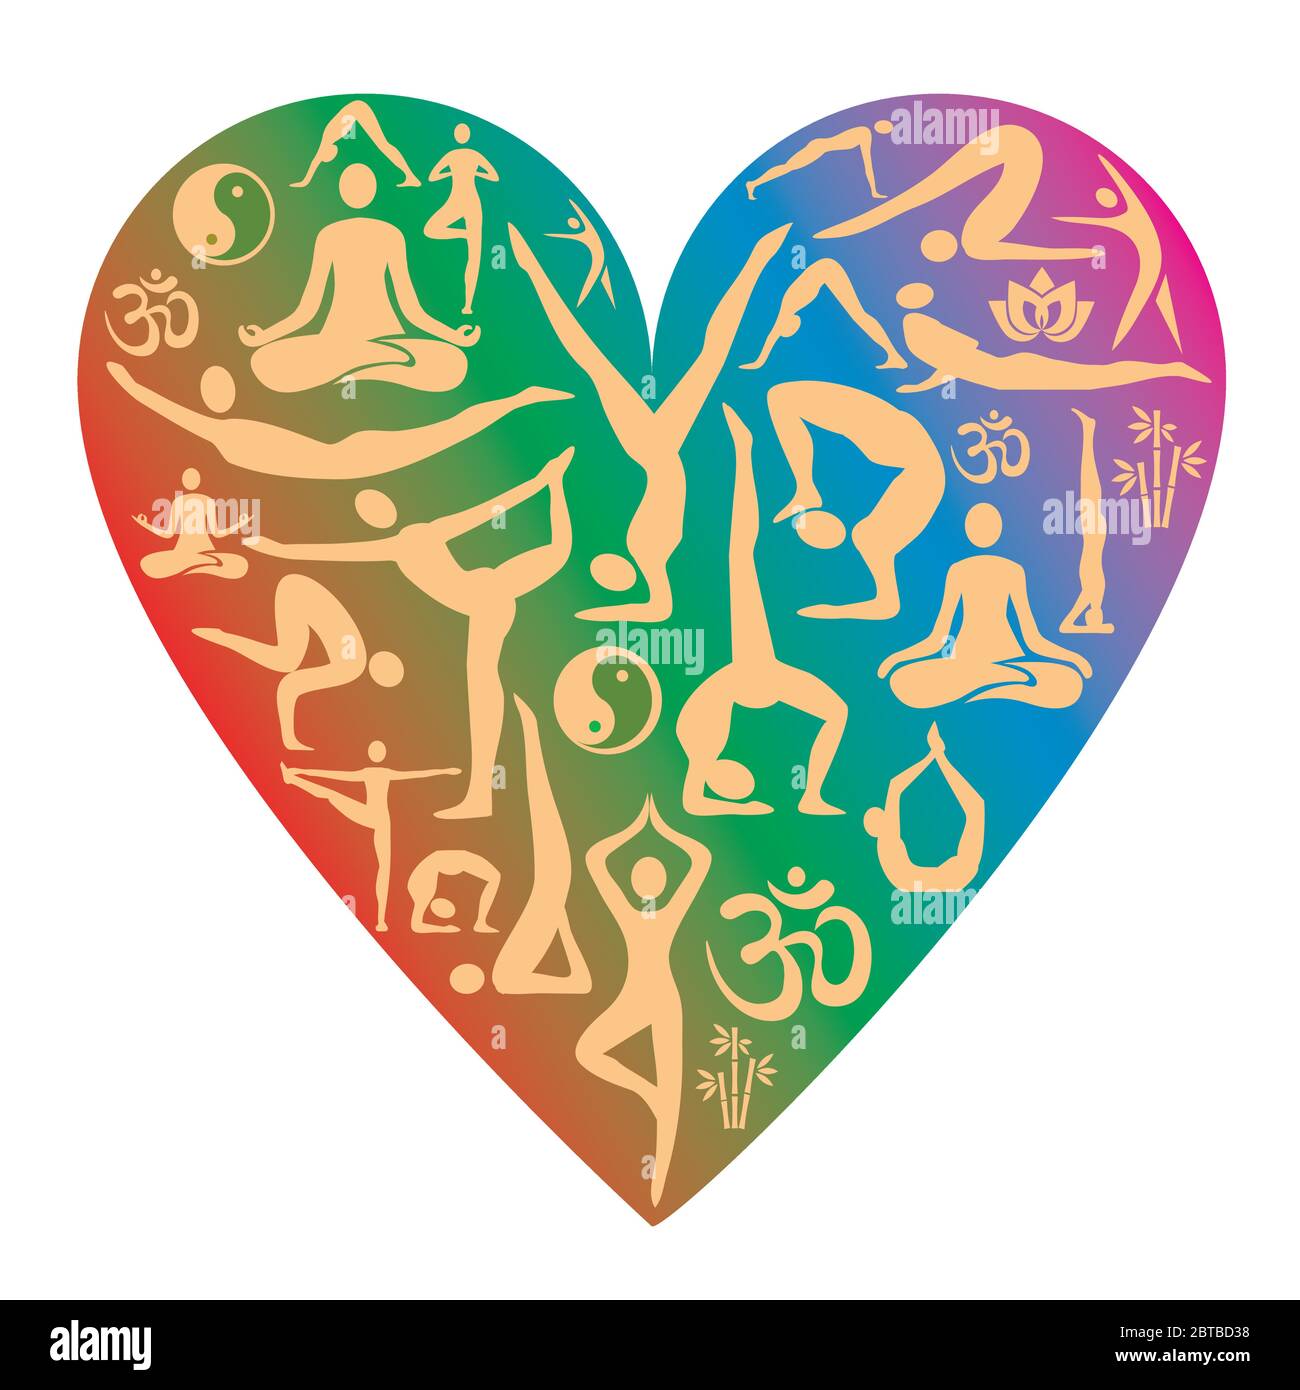 Amo lo yoga, le icone. Illustrazione del simbolo colorato del cuore con simboli yoga. Vettore disponibile. Illustrazione Vettoriale